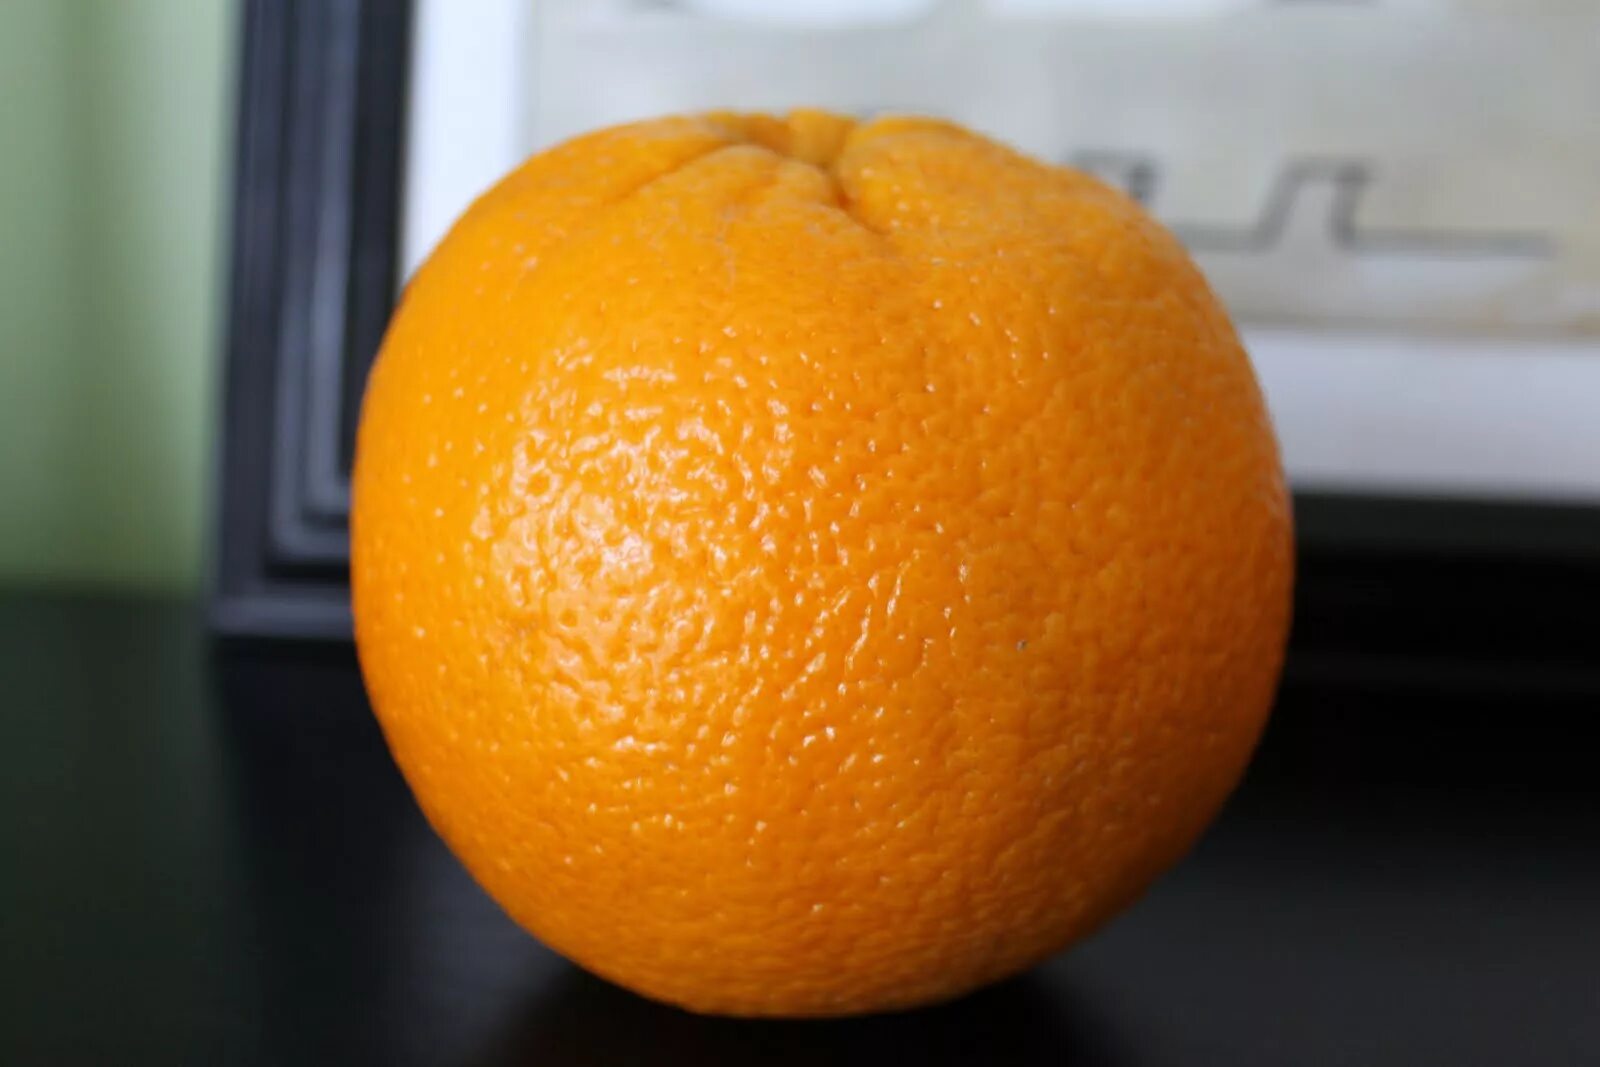 Orange choose. Apelsin 1:1. Мандарин померанец. Мандарины Минеола. Большой апельсин.